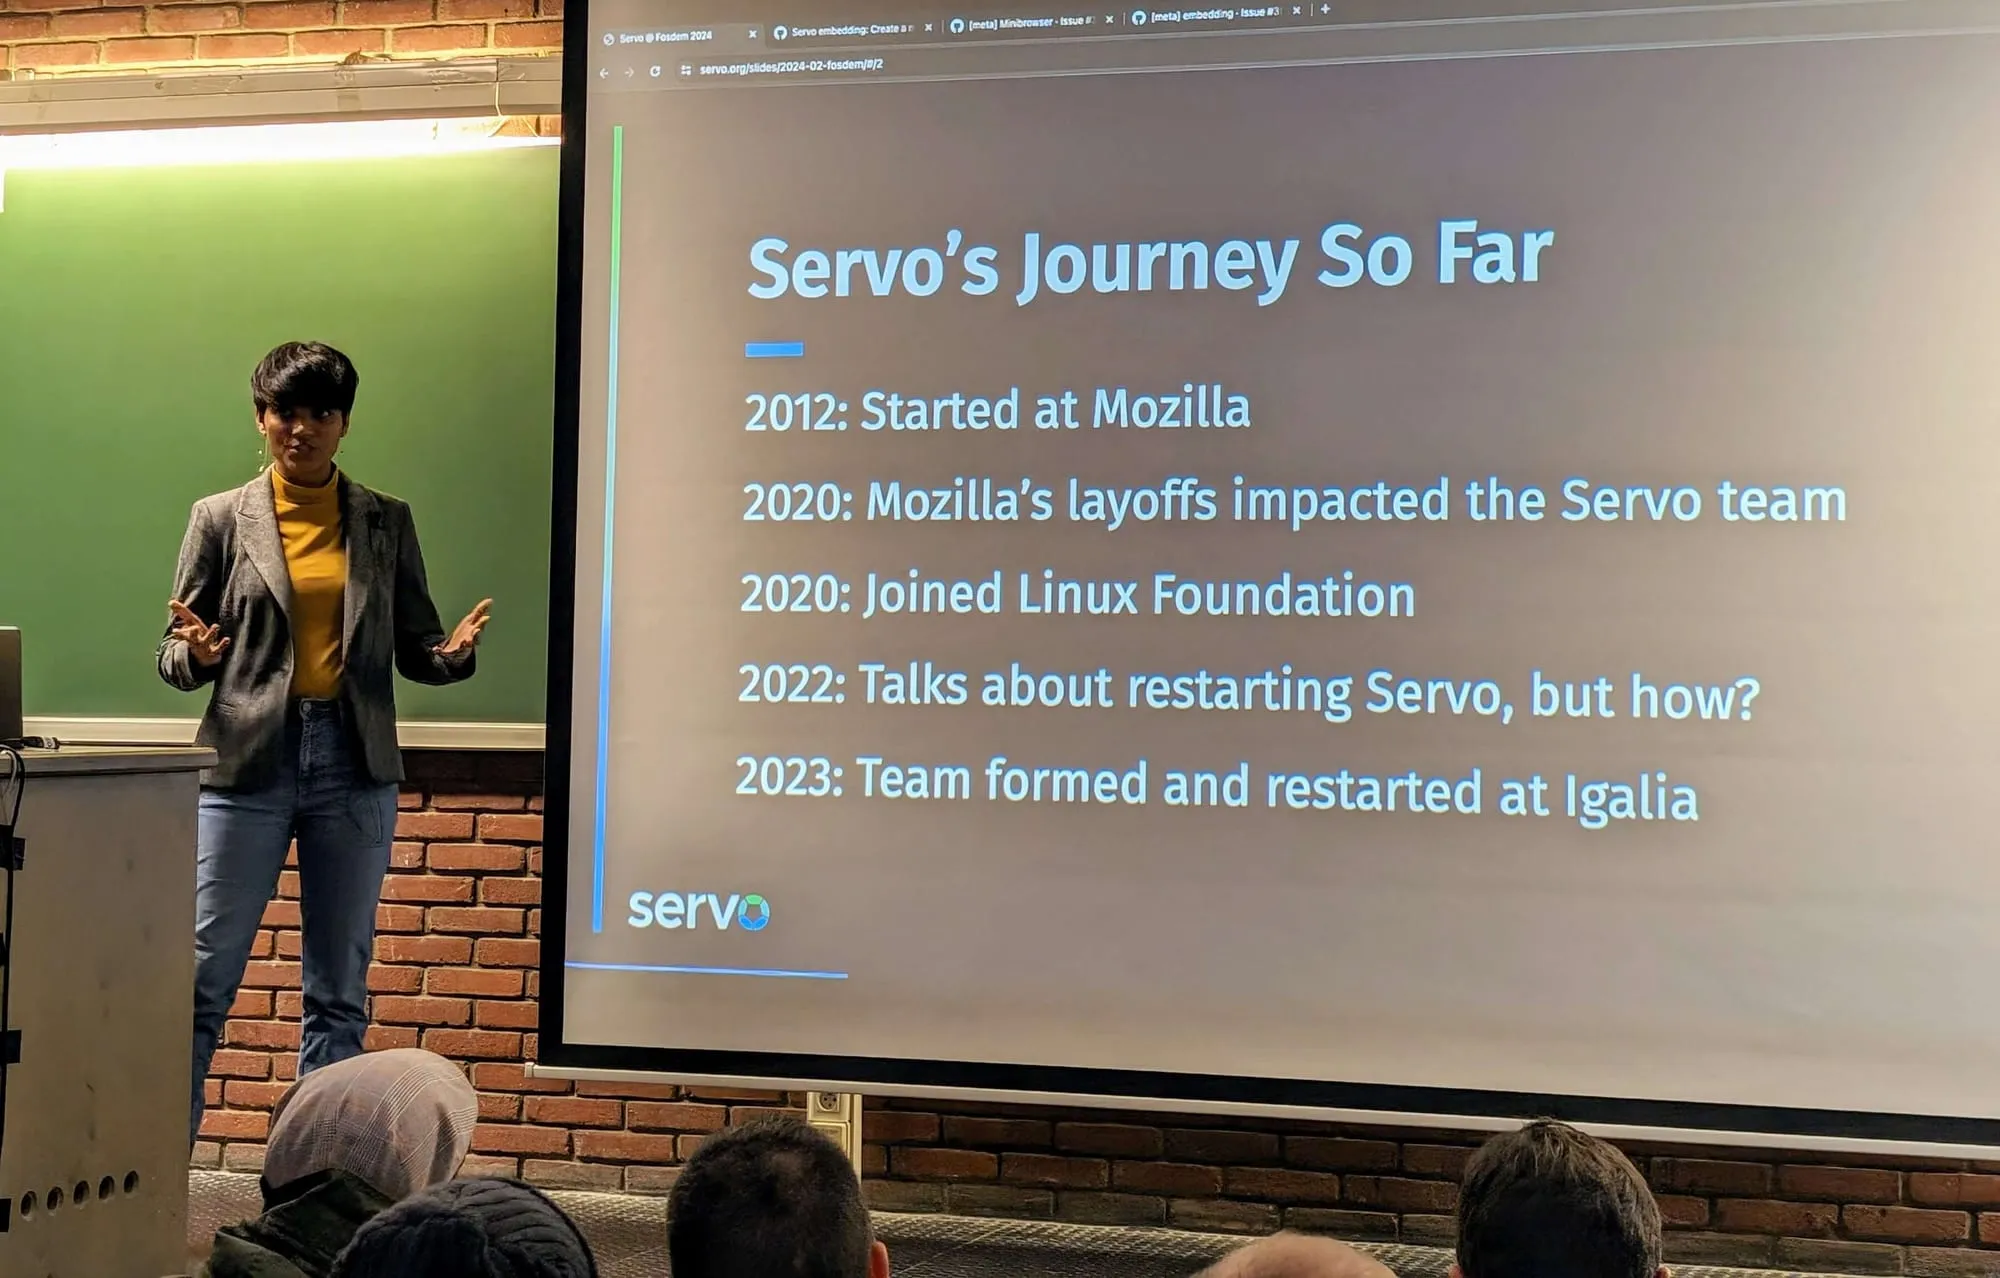 Uma foto mostrando um membro do projeto Servo apresentando a jornada do servo até agora